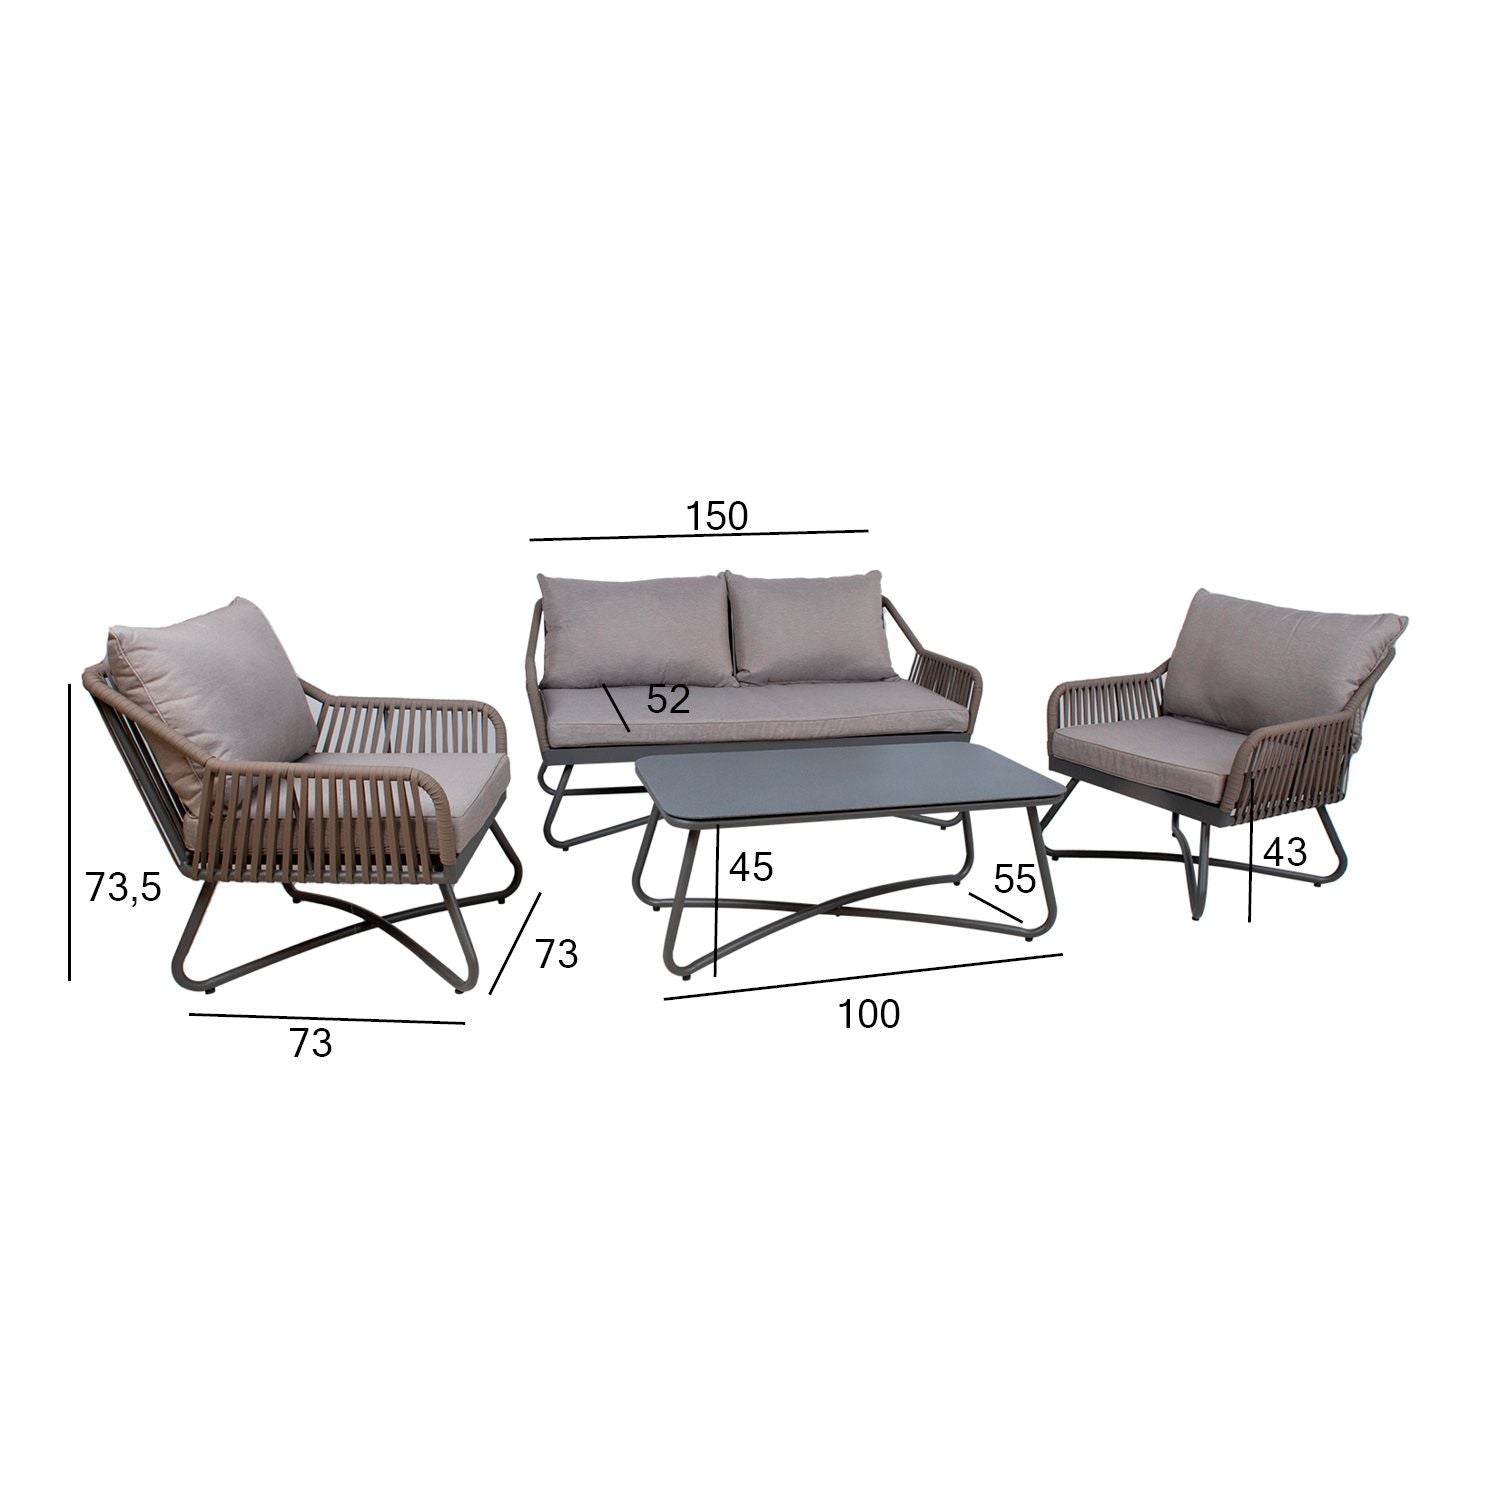 Sodo baldų komplektas ANDROS: stalas, sofa ir 2 foteliai, pilka/tape.